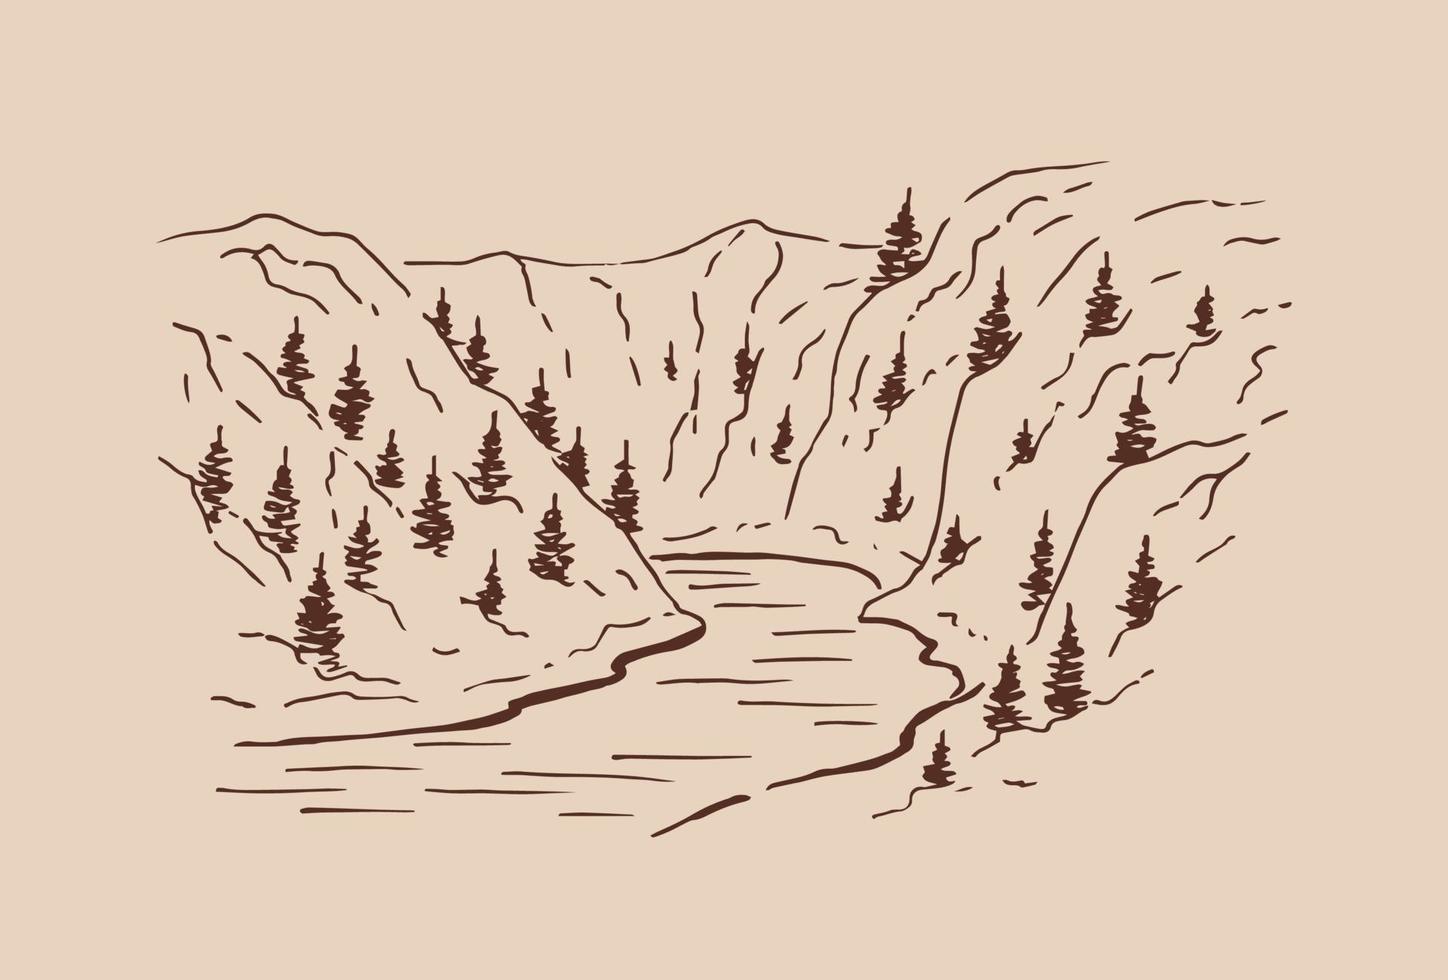 Landschaft mit Bergen und Wald. handgezeichnete illustration in vektor umgewandelt.